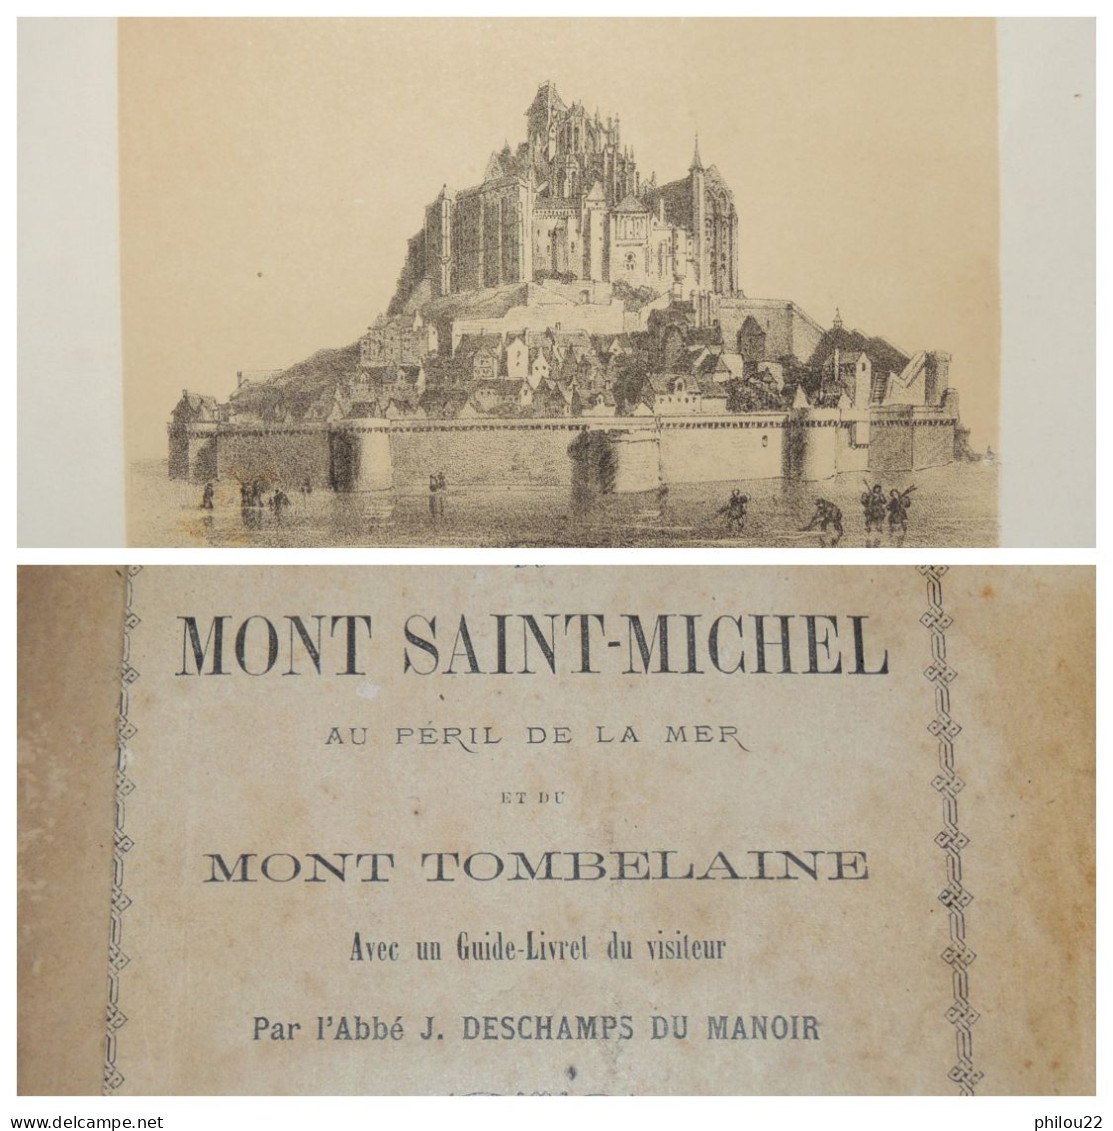 DESCHAMPS DU MANOIR - Histoire Du Mont-Saint-Michel...  E.O.  1869 - 1801-1900